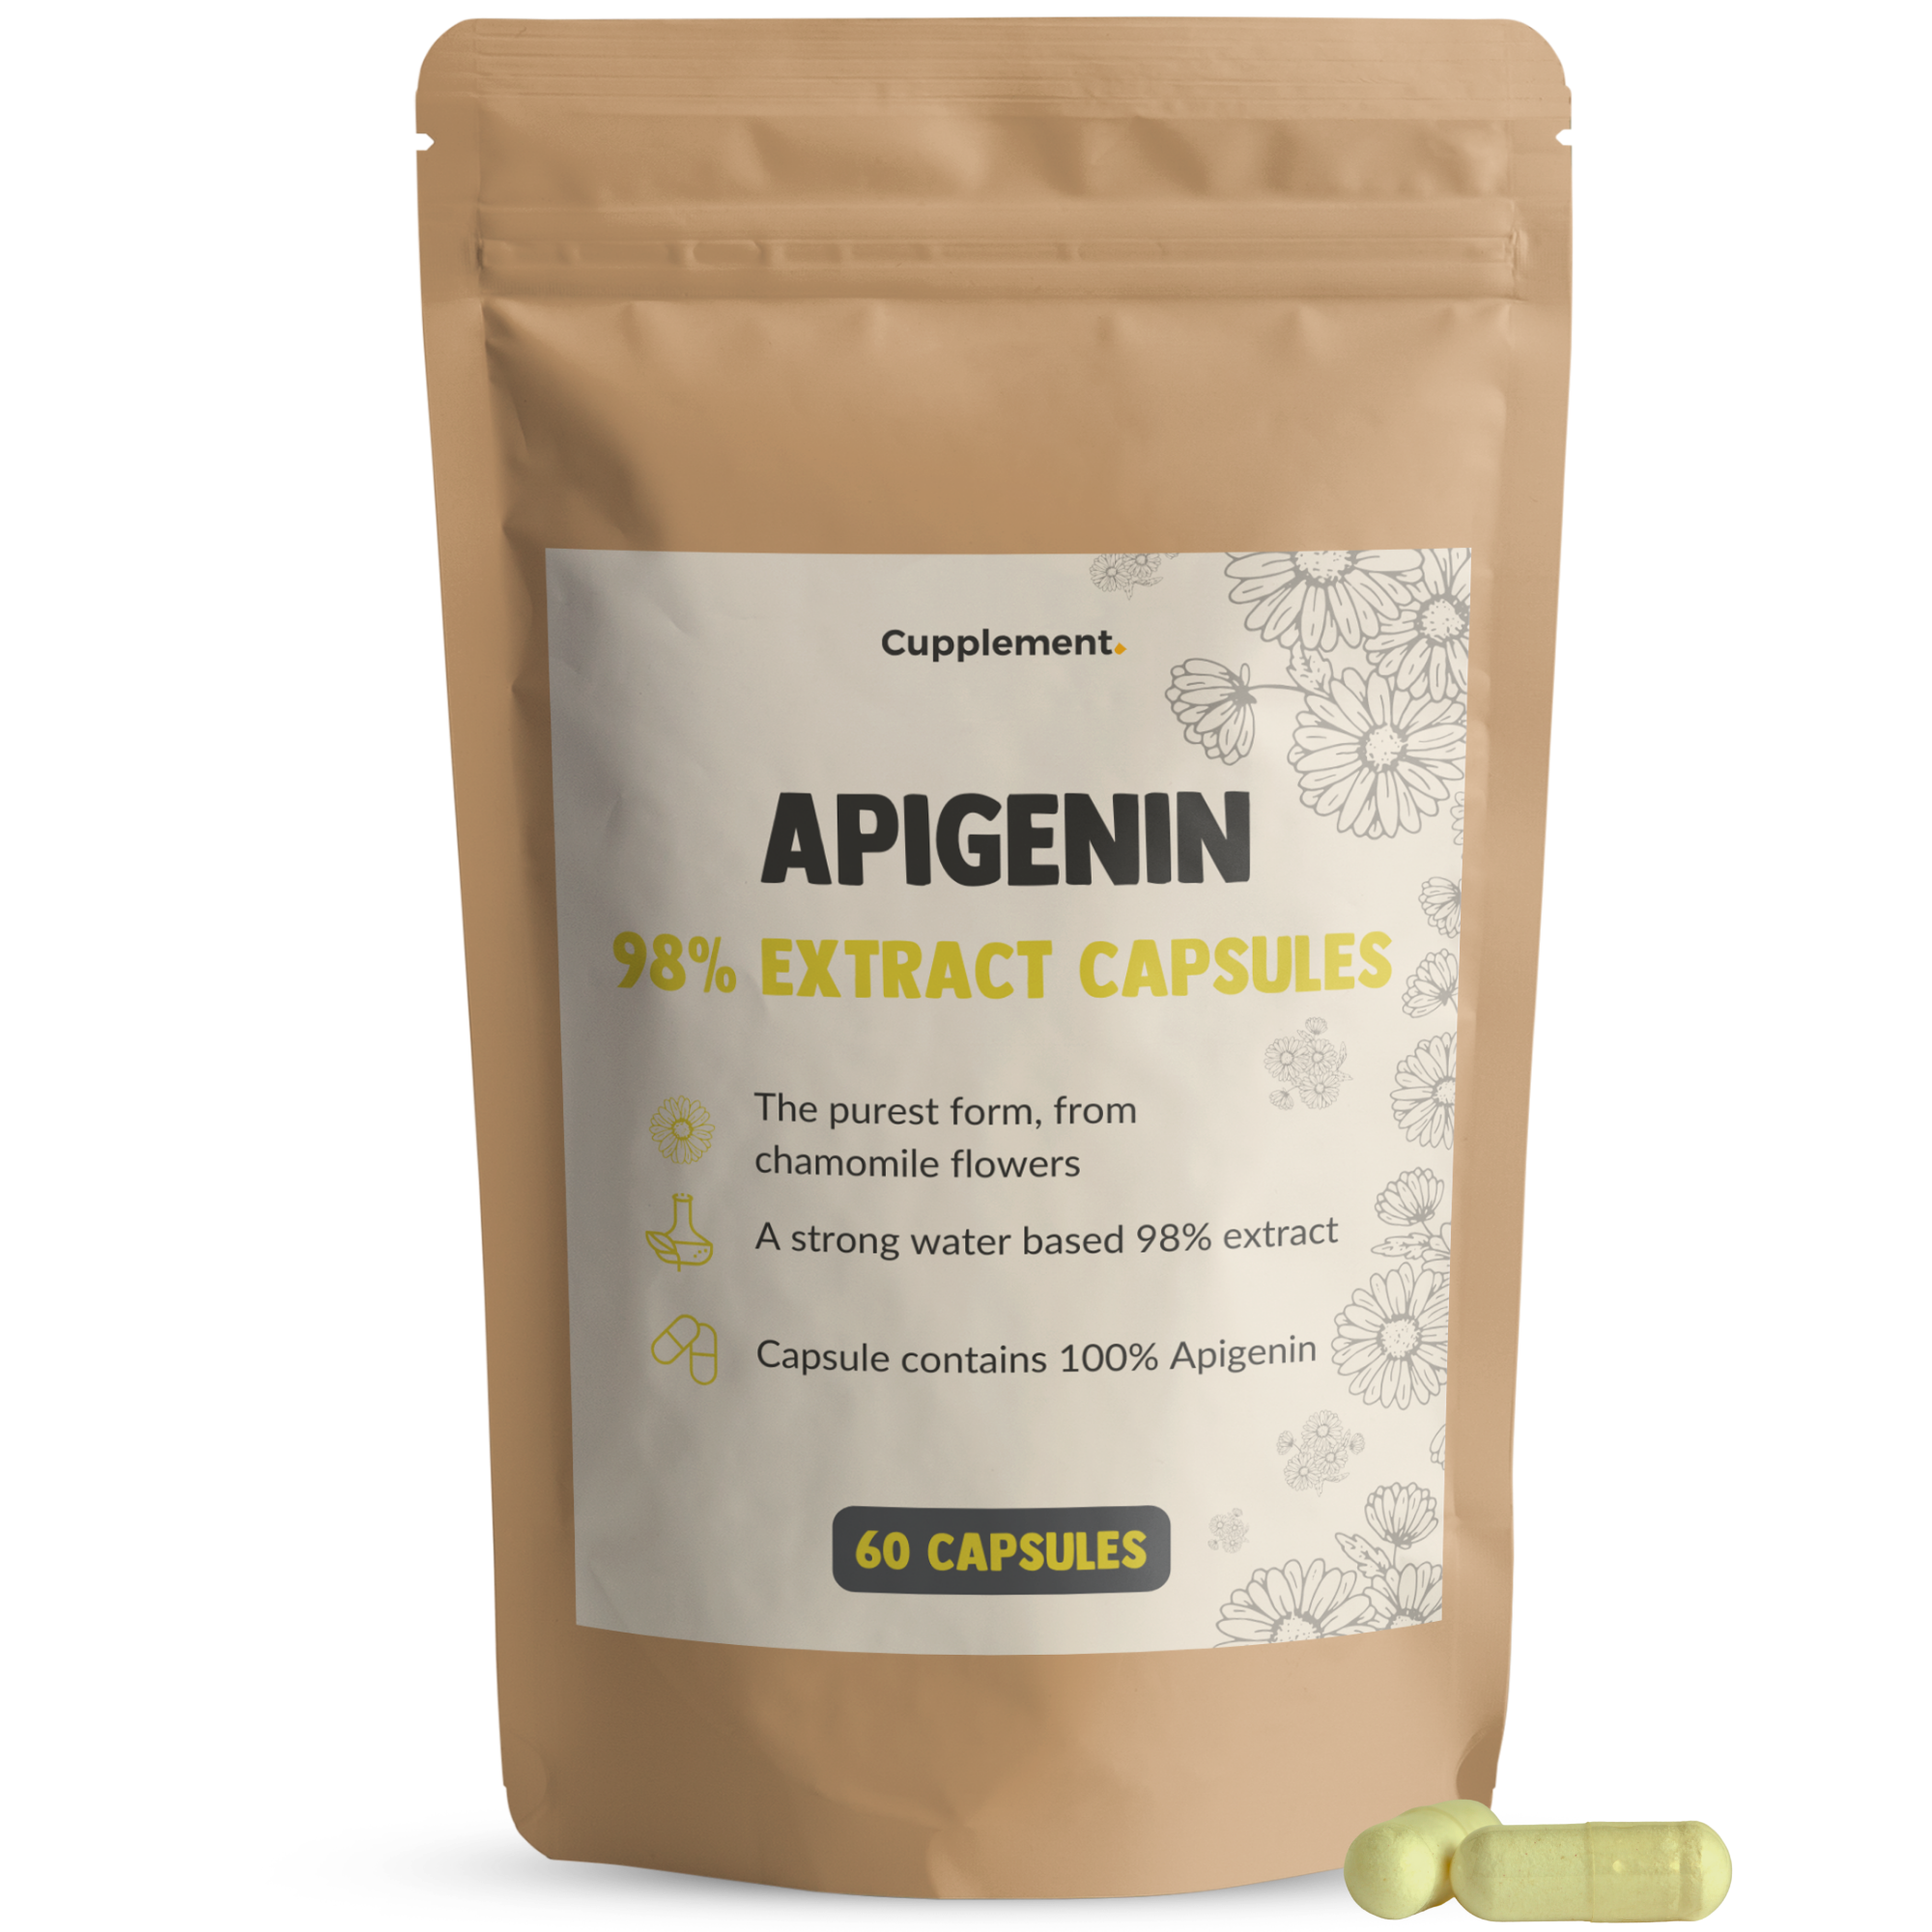 Apigenin Extract Capsules